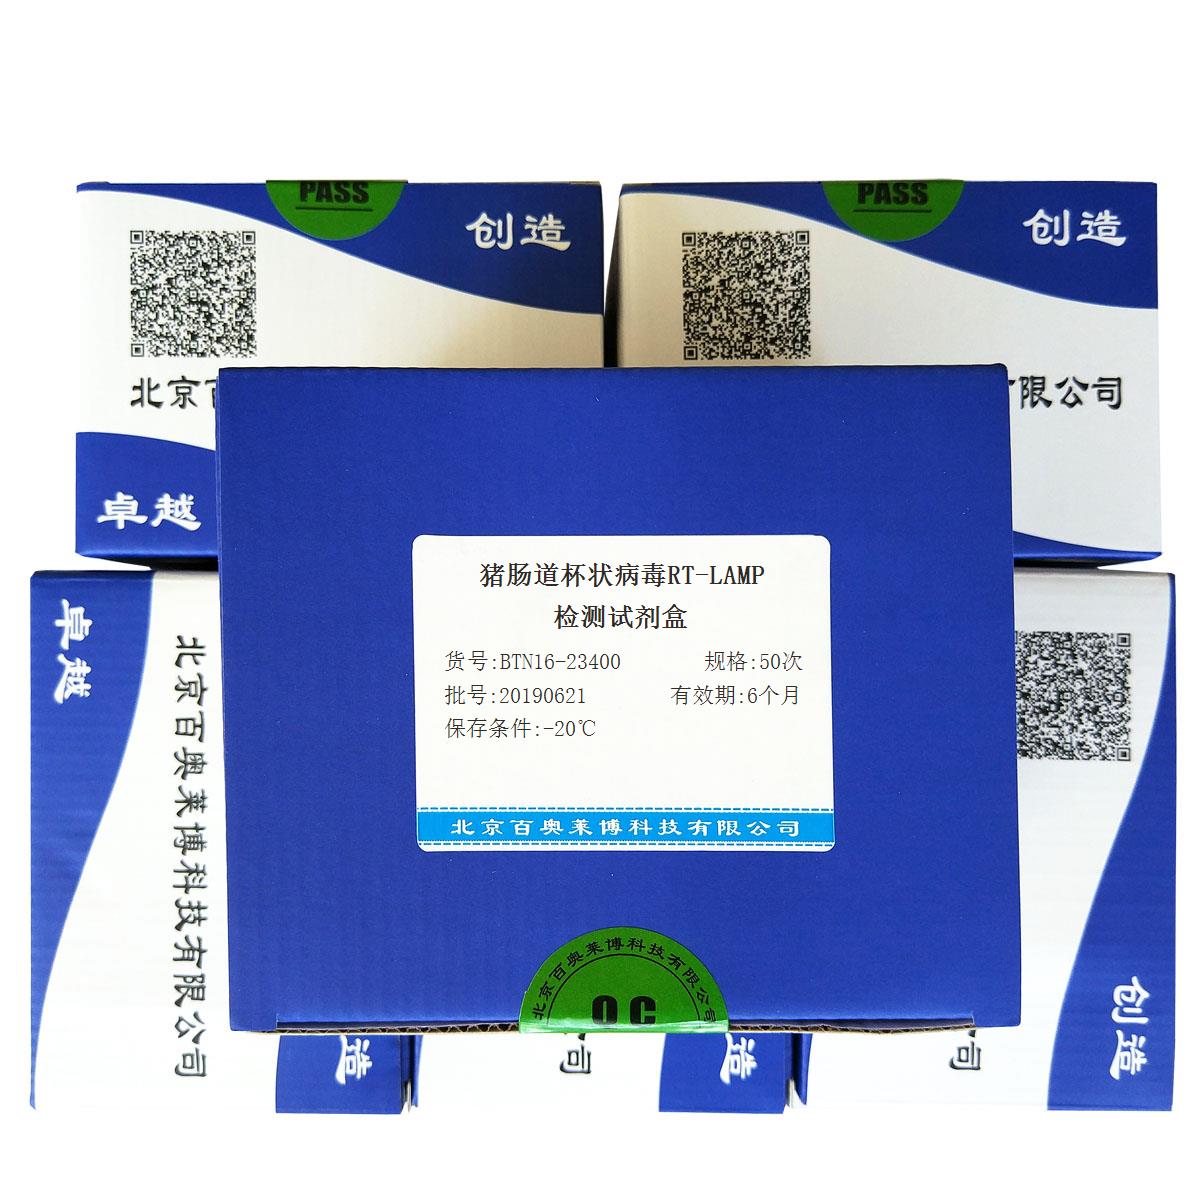 猪肠道杯状病毒RT-LAMP检测试剂盒北京供应商